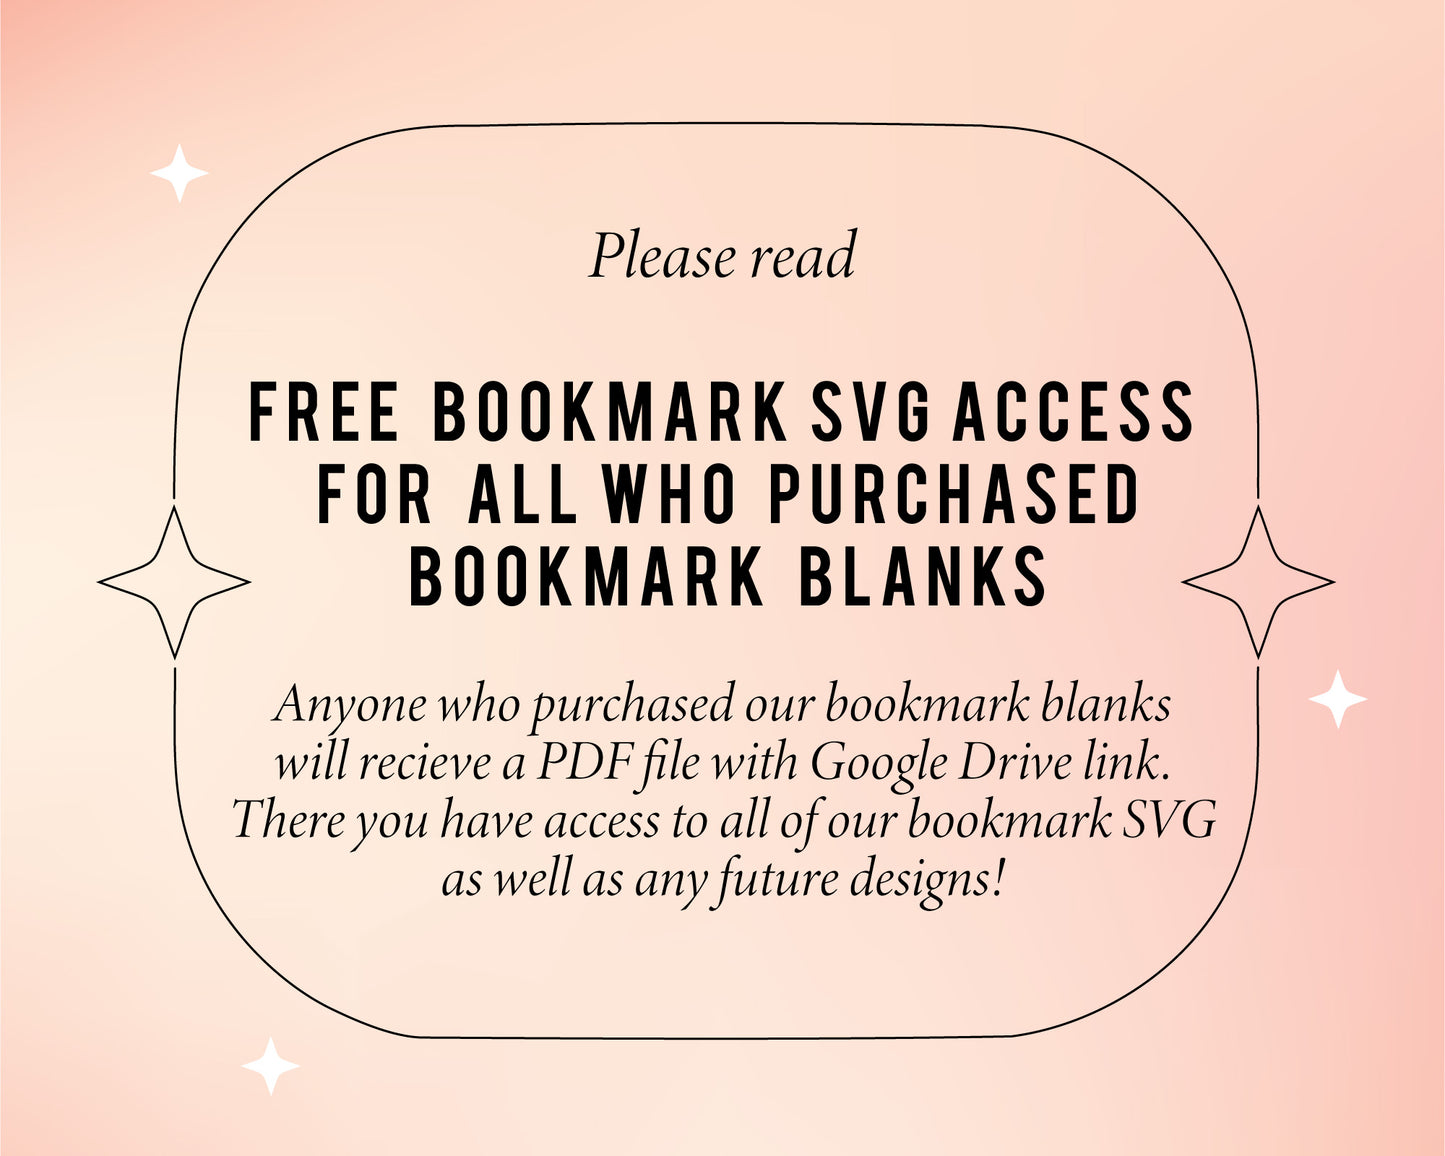 Bookmark Template SVG | Boho Flower SVG